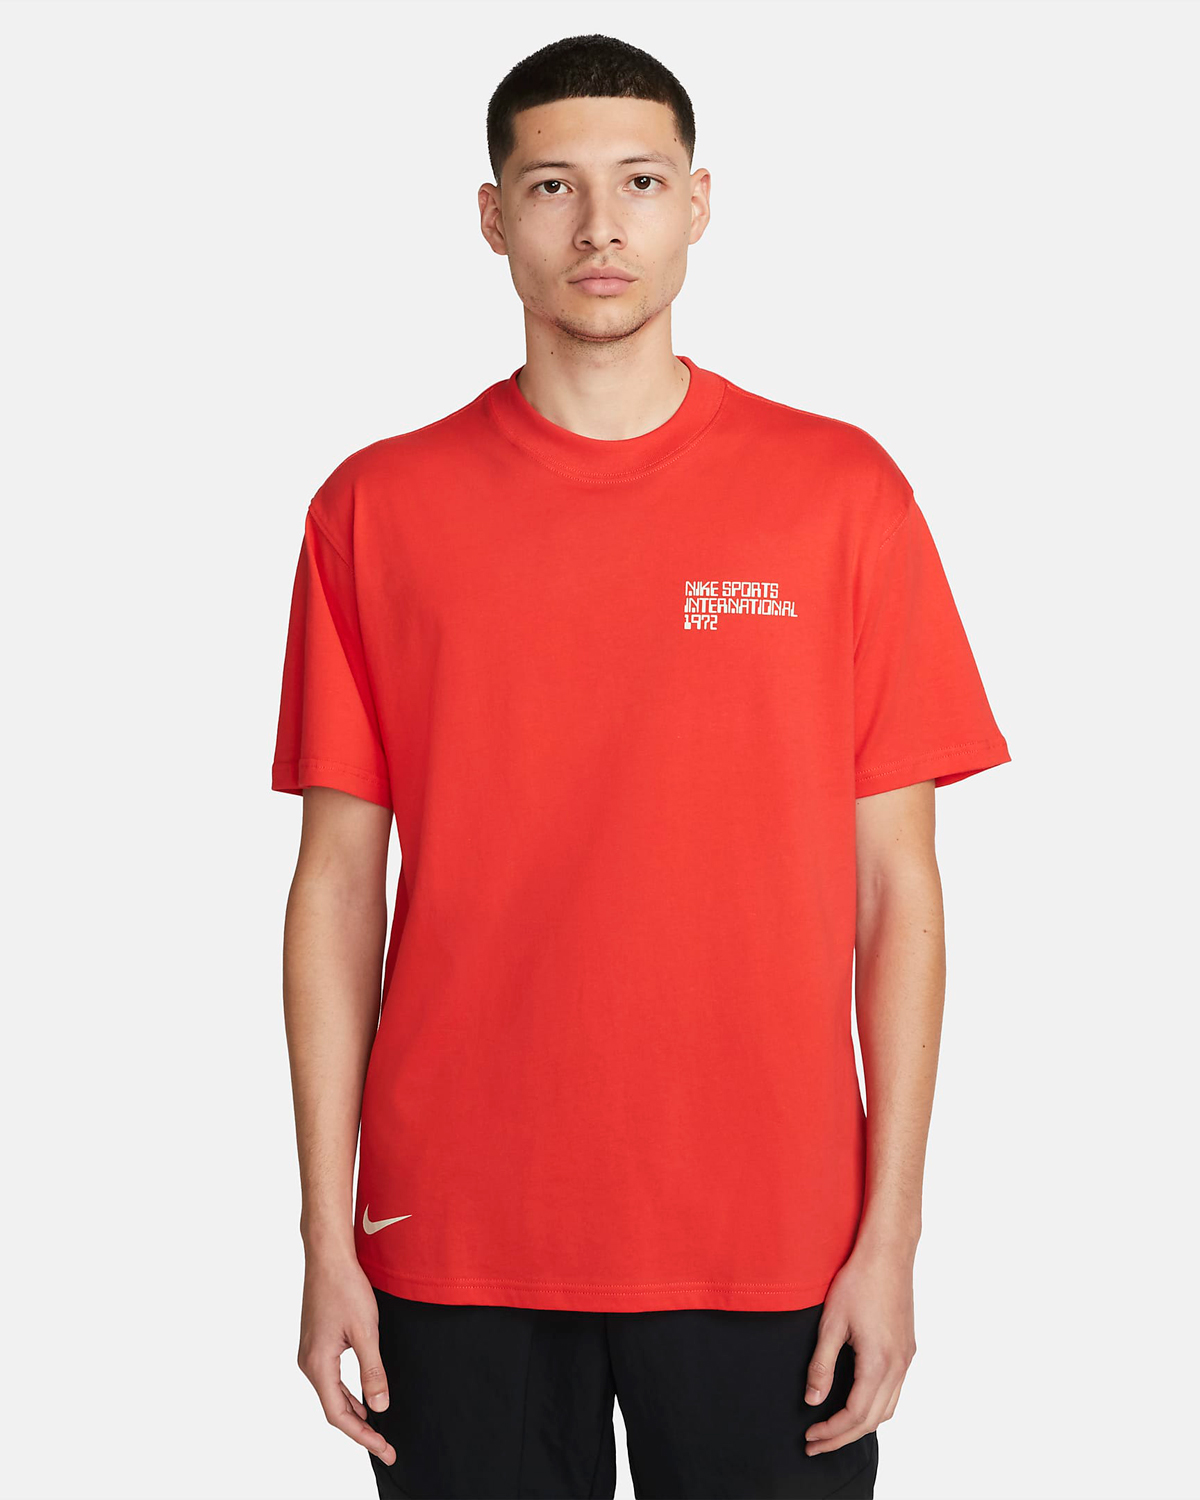 Nike-Sportswear-Circa-T-Shirt-Light-Crimson-1